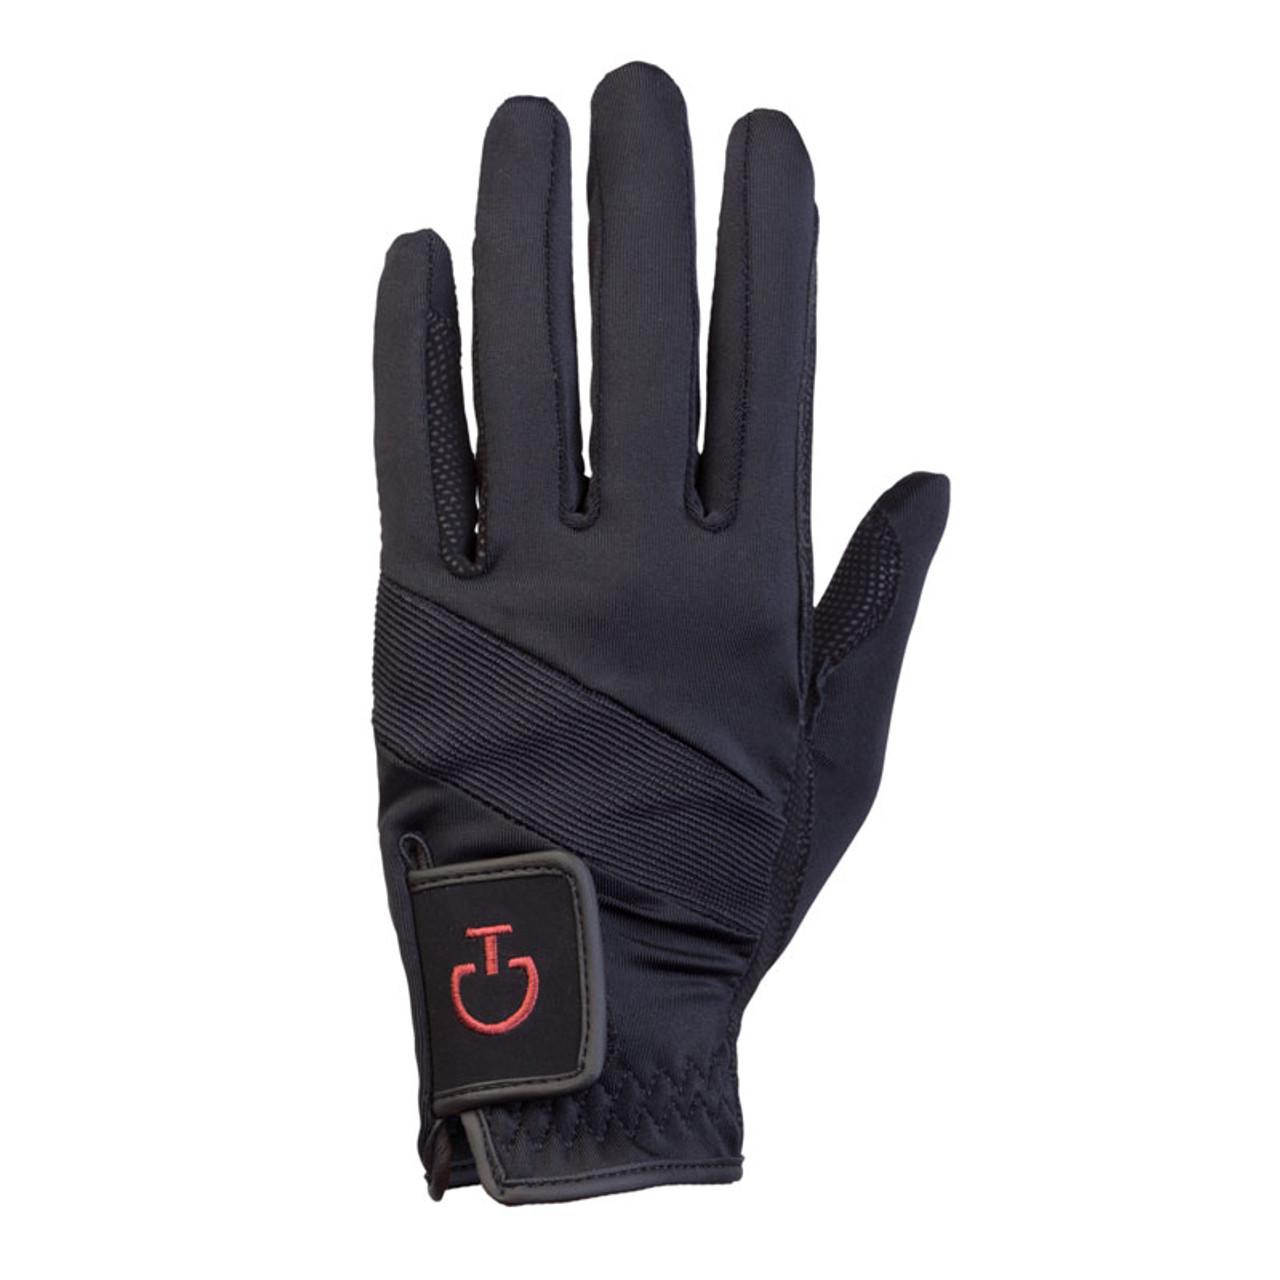 Cavalleria Toscana Tech Gloves- Riding